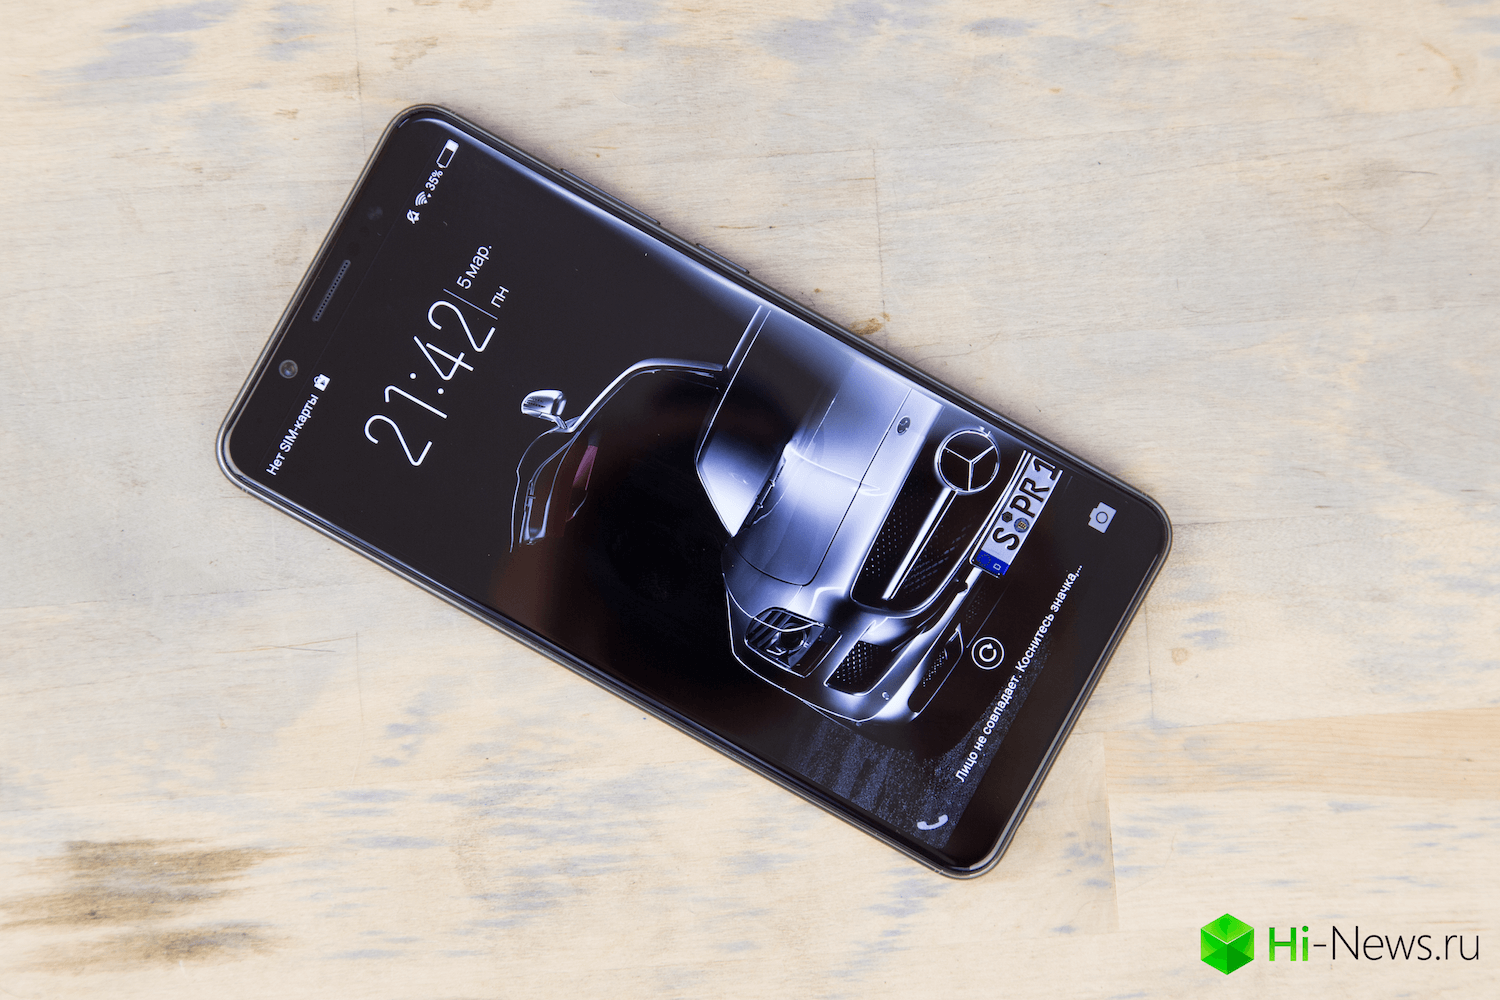 विवो V7 प्लस — एक स्मार्टफोन है कि ब्याज की है